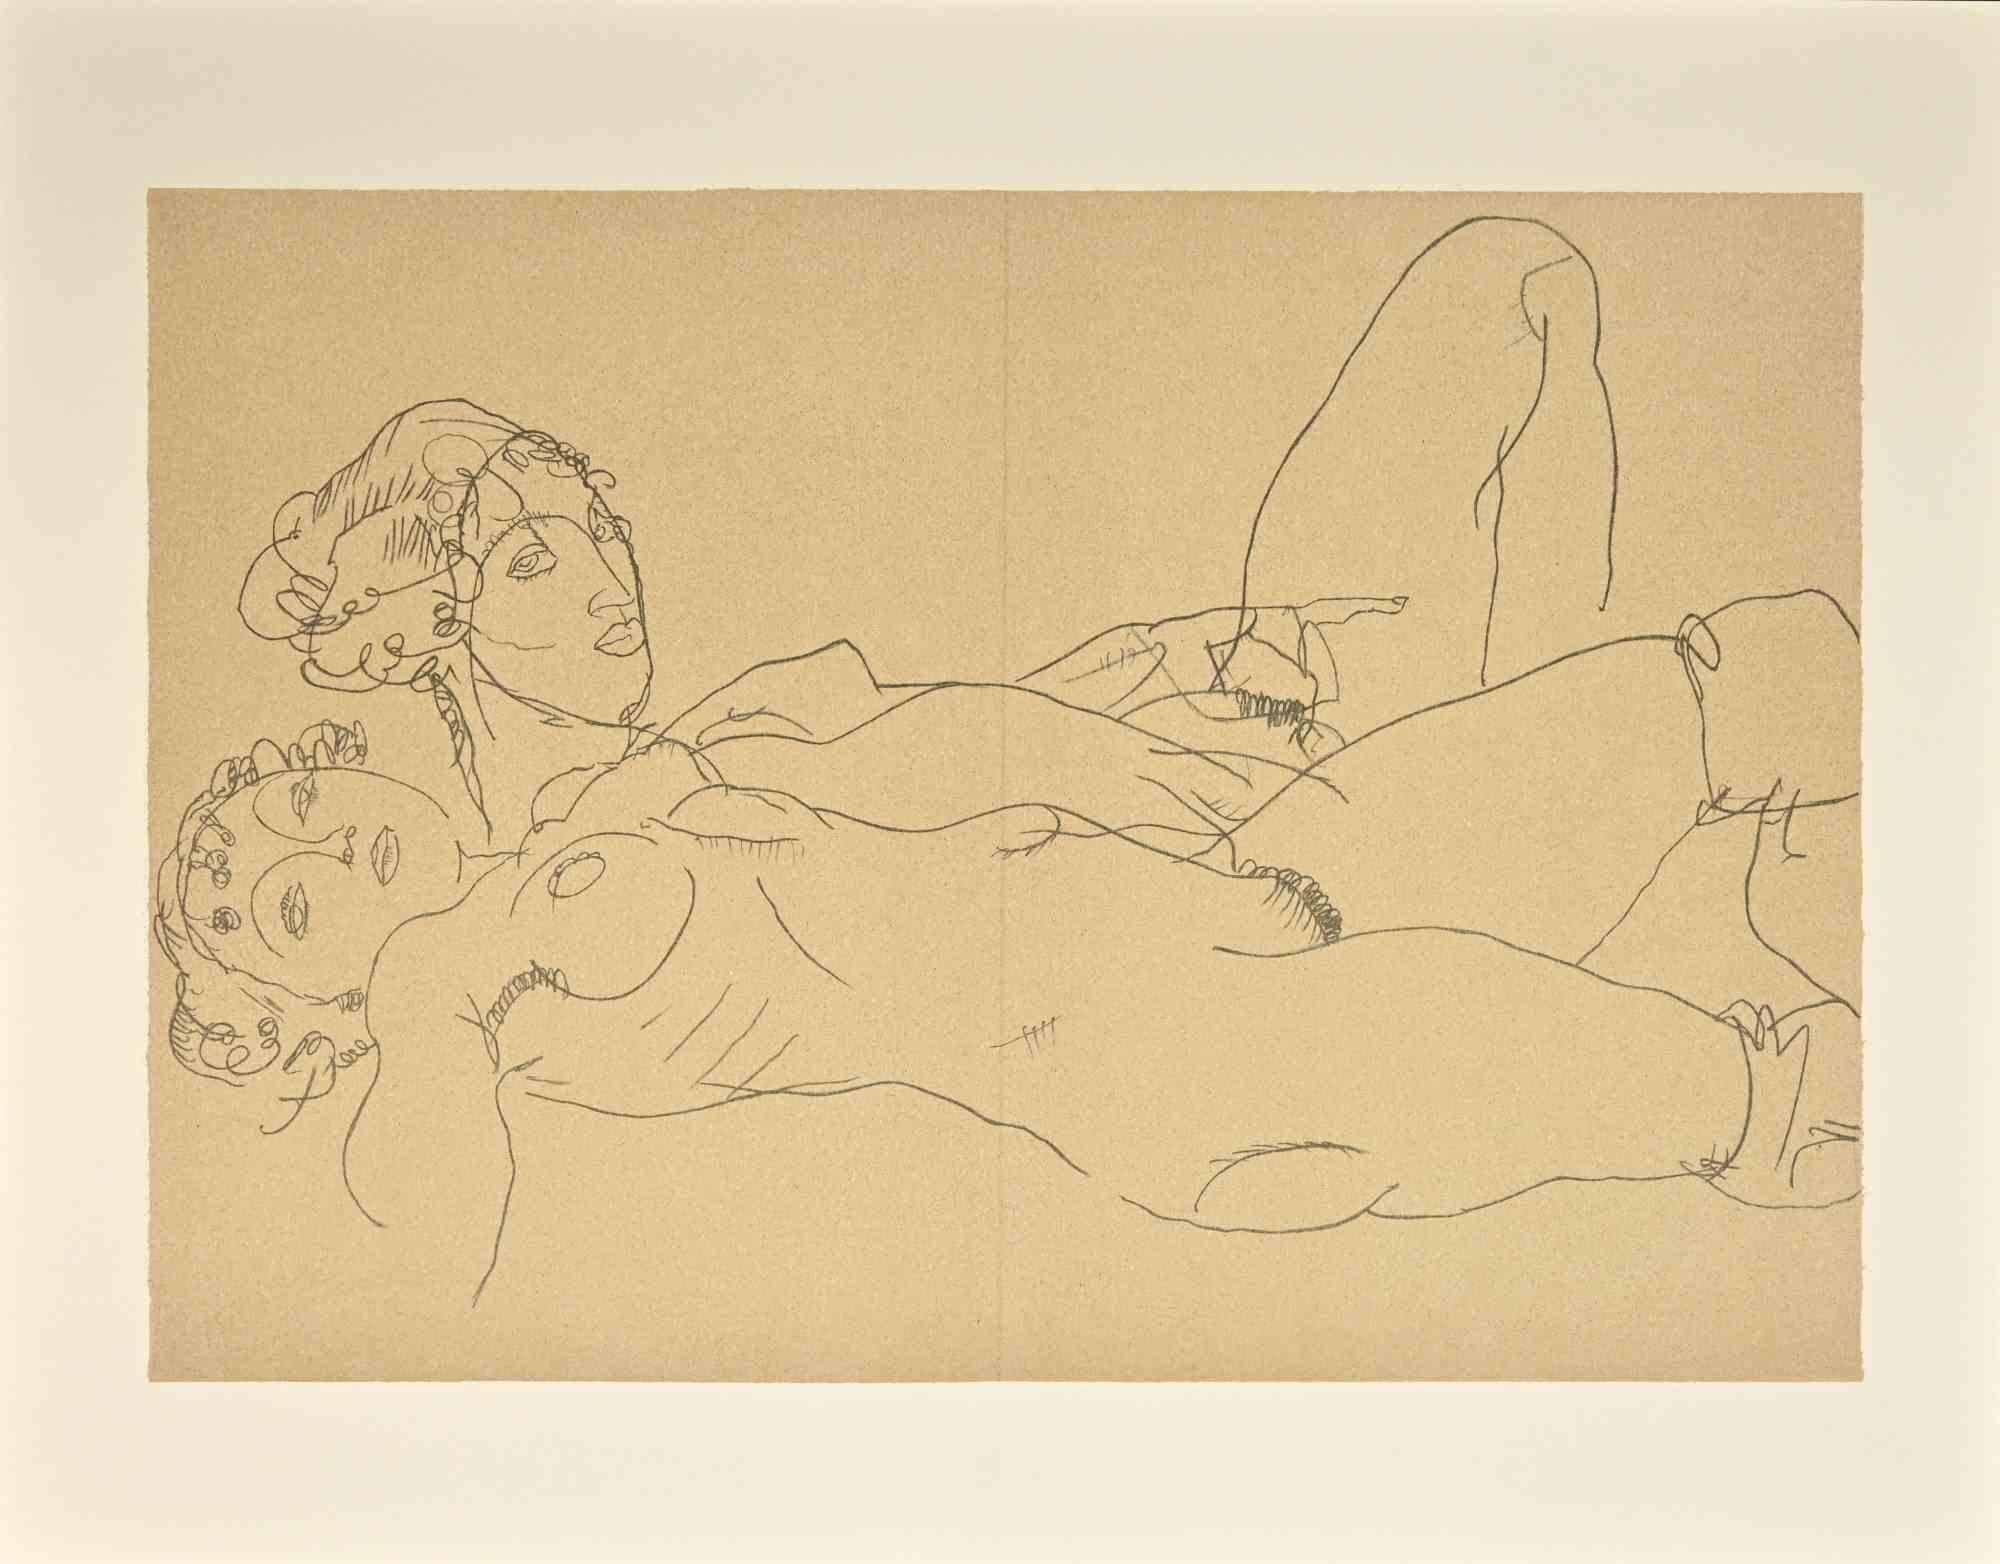 Zwei liegende nackte Mädchen  ist eine schöne Lithographie aus der Mappe "Erotica" nach Egon Schiele.

Es handelt sich um eine Reproduktion der gleichnamigen Bleistiftzeichnung des österreichischen Meisters aus dem Jahr 1914.  Auflage von 1200